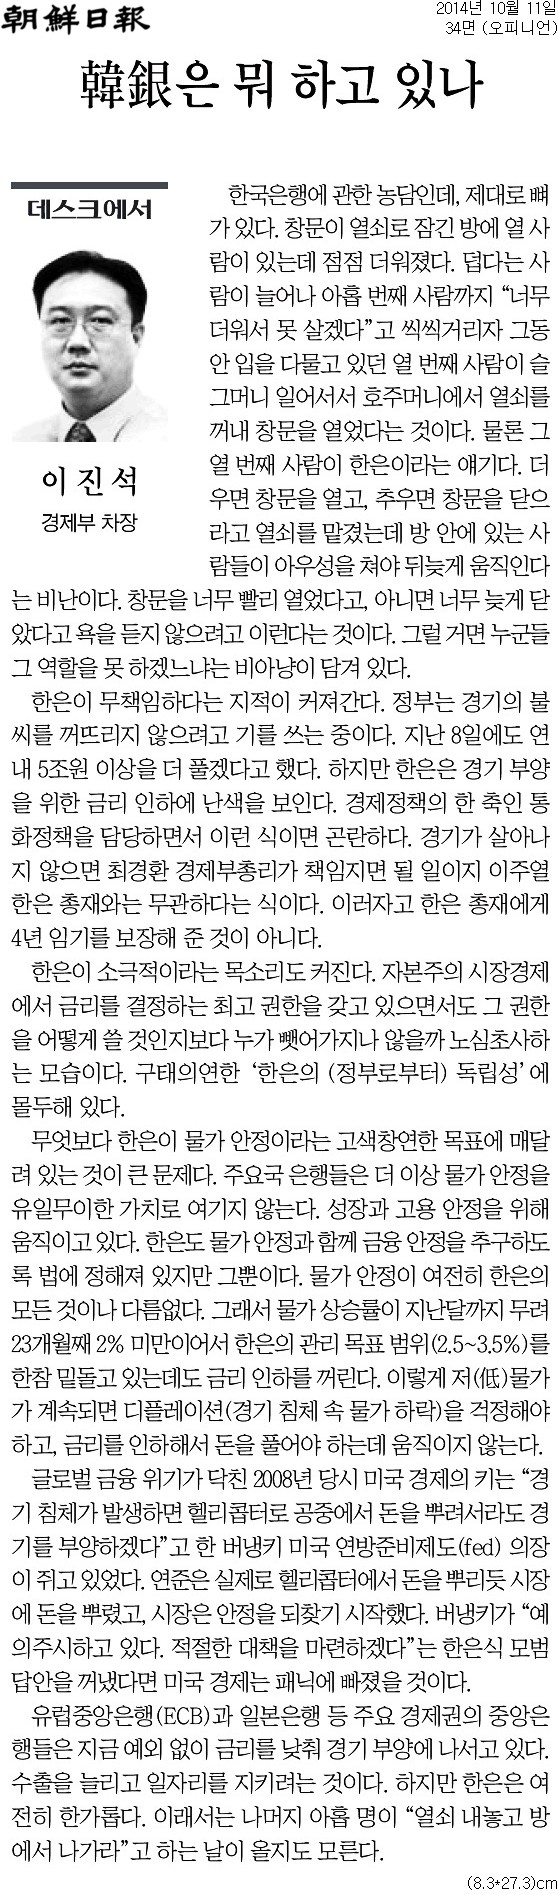 ▲ 조선일보 2014년 10월11일자 데스크 칼럼.